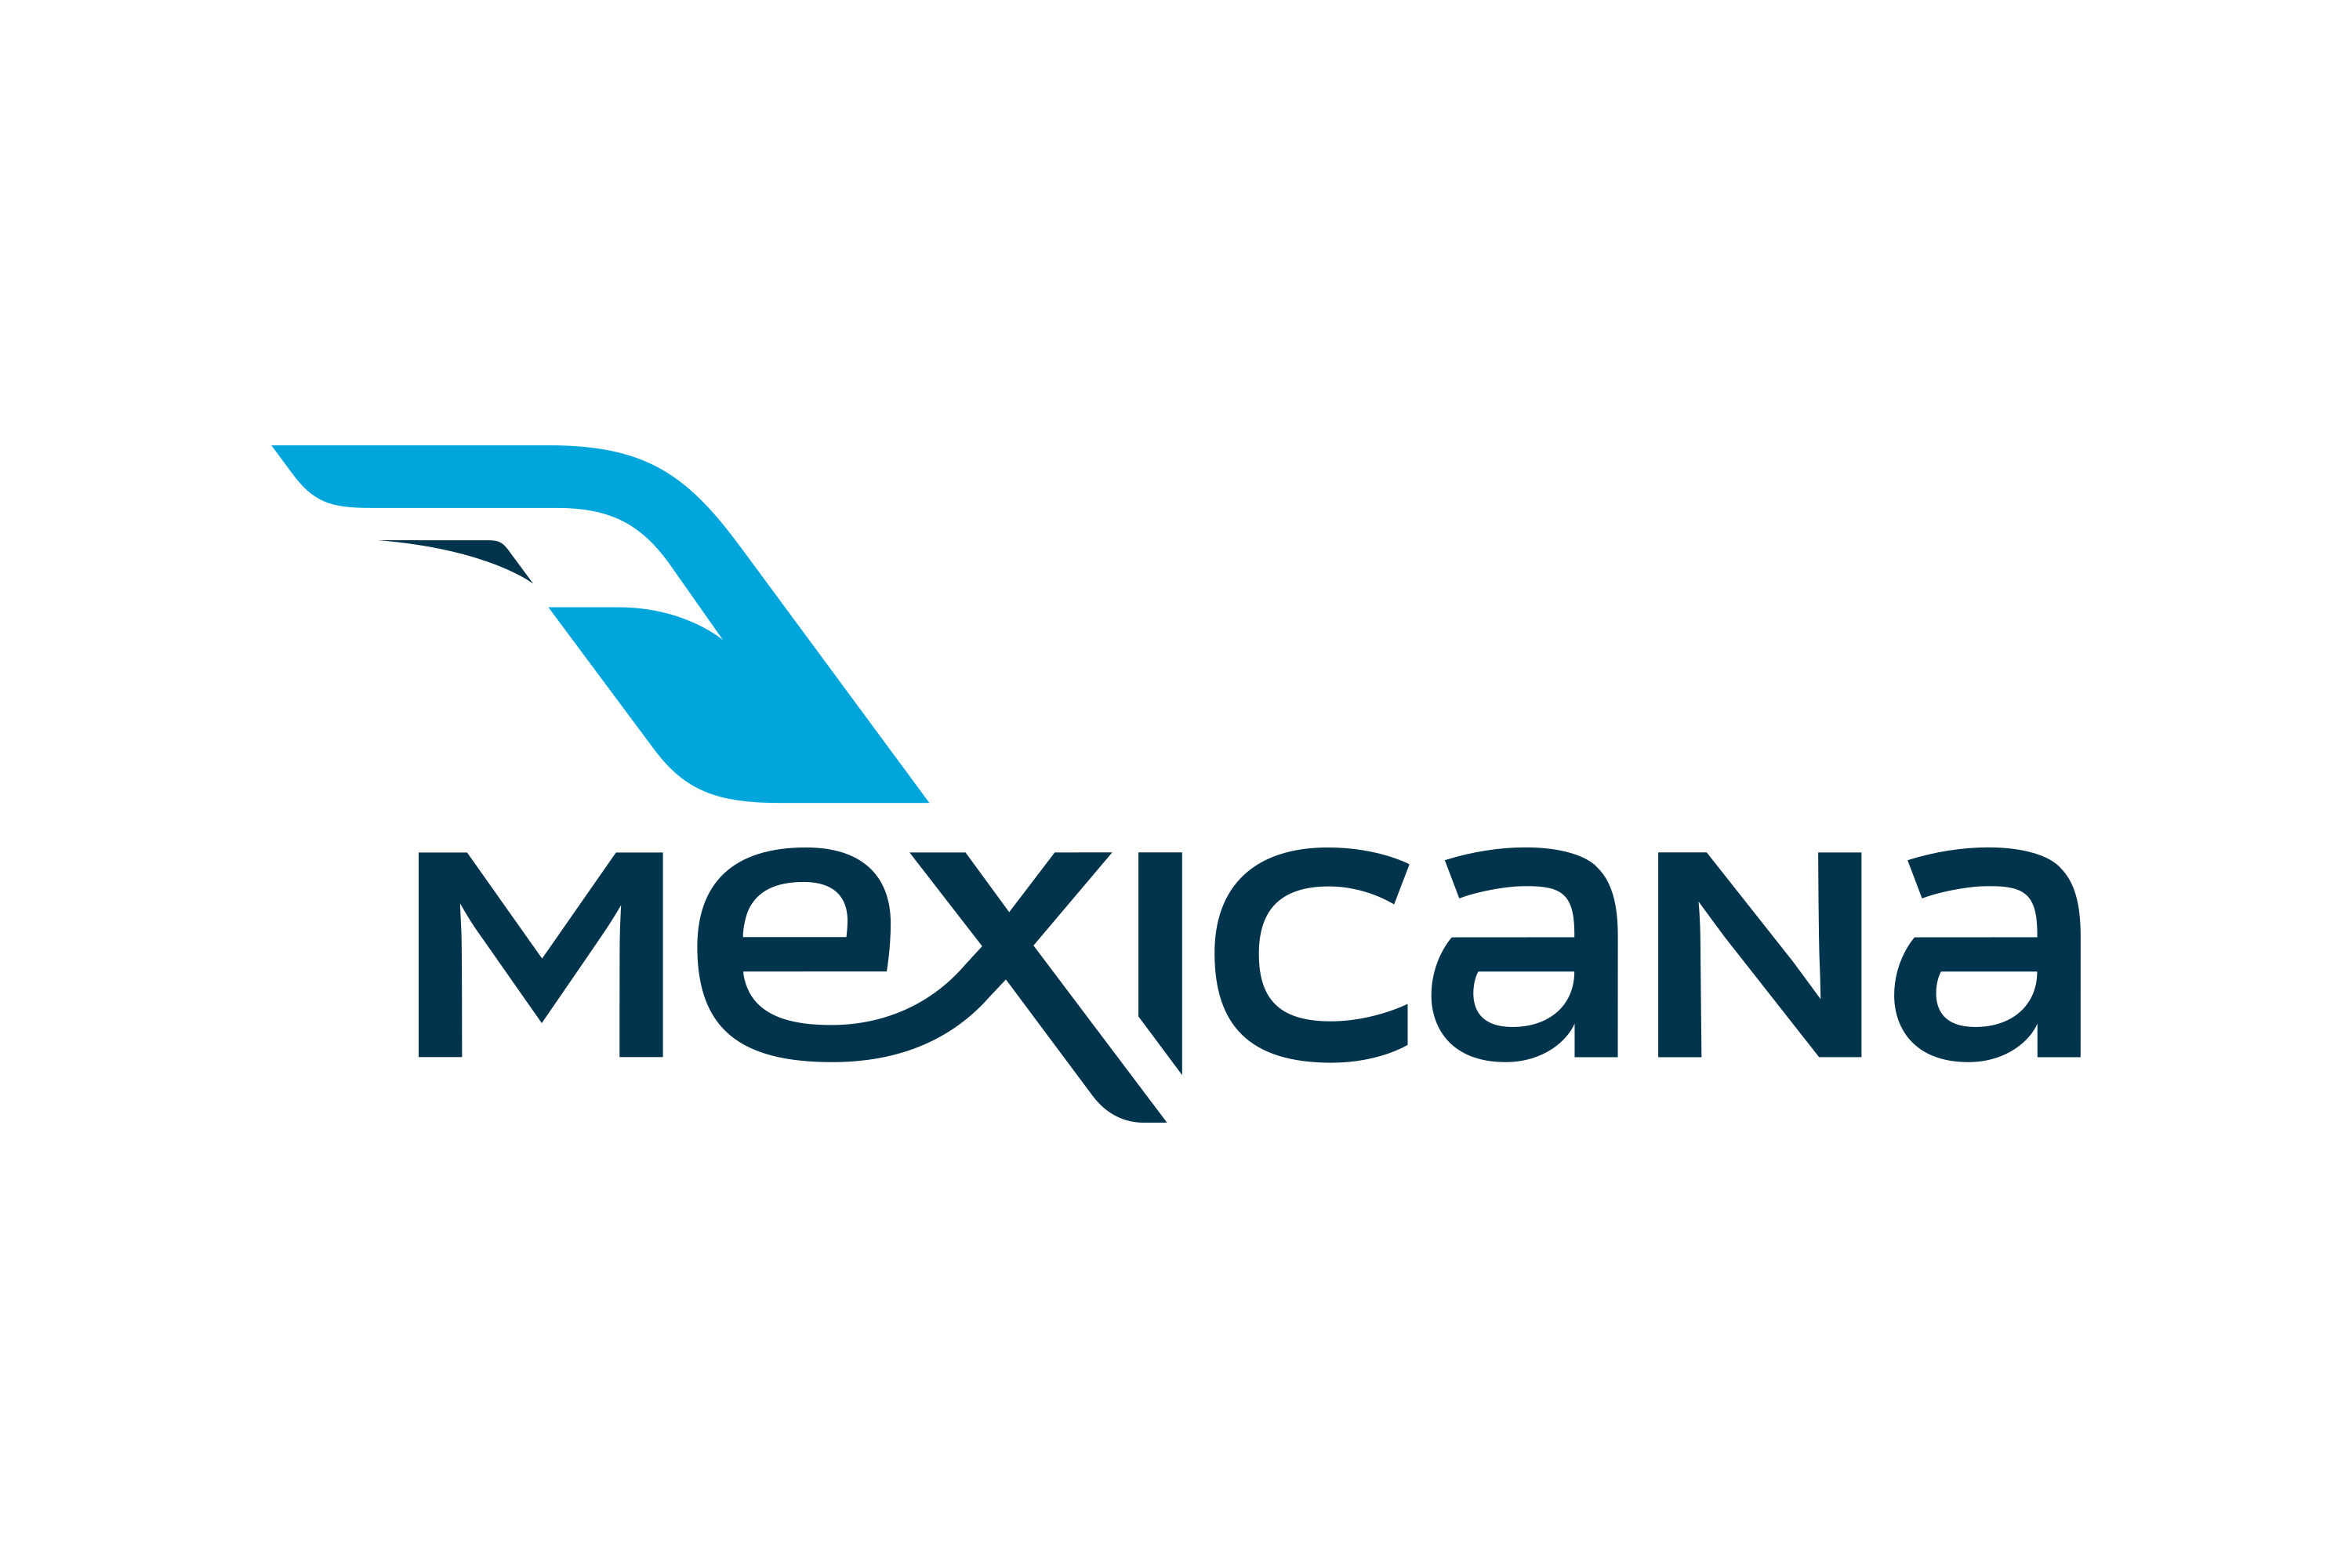 Download Mexicana de Aviación Logo in SVG Vector or PNG File Format